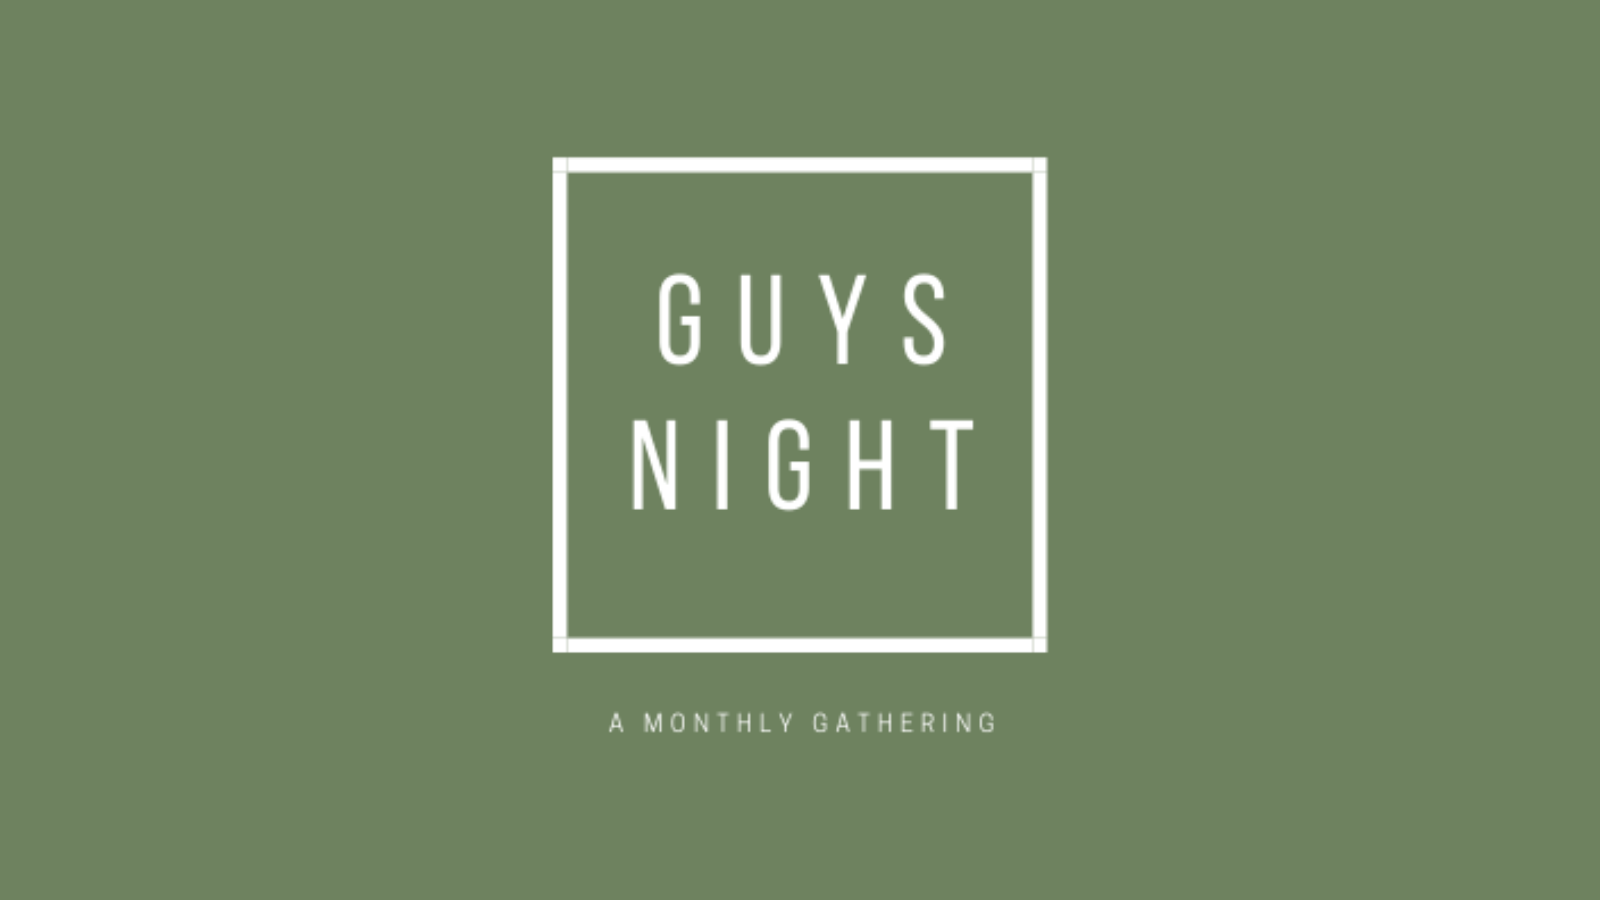 guys night (1600 x 900 px) image